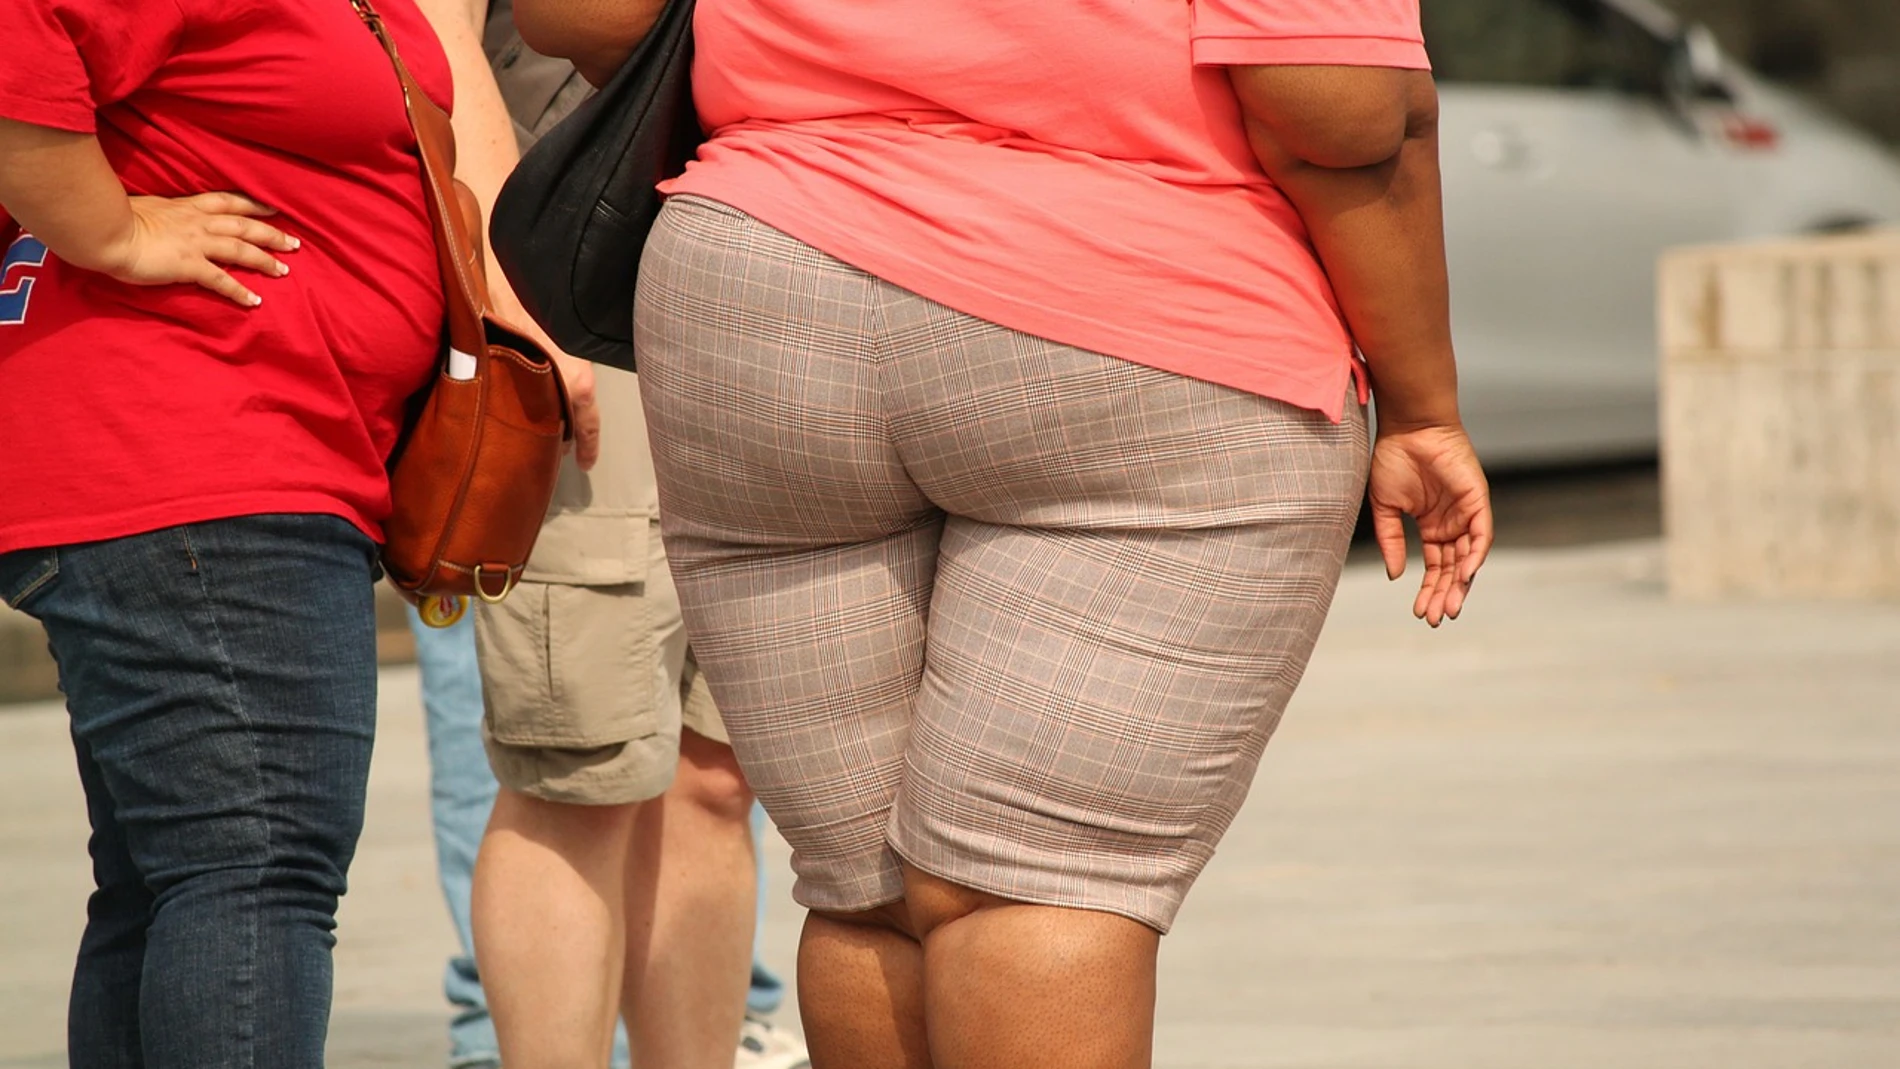 La obesidad mórbida en jóvenes multiplica por 14 el riesgo de complicaciones por Covid-19